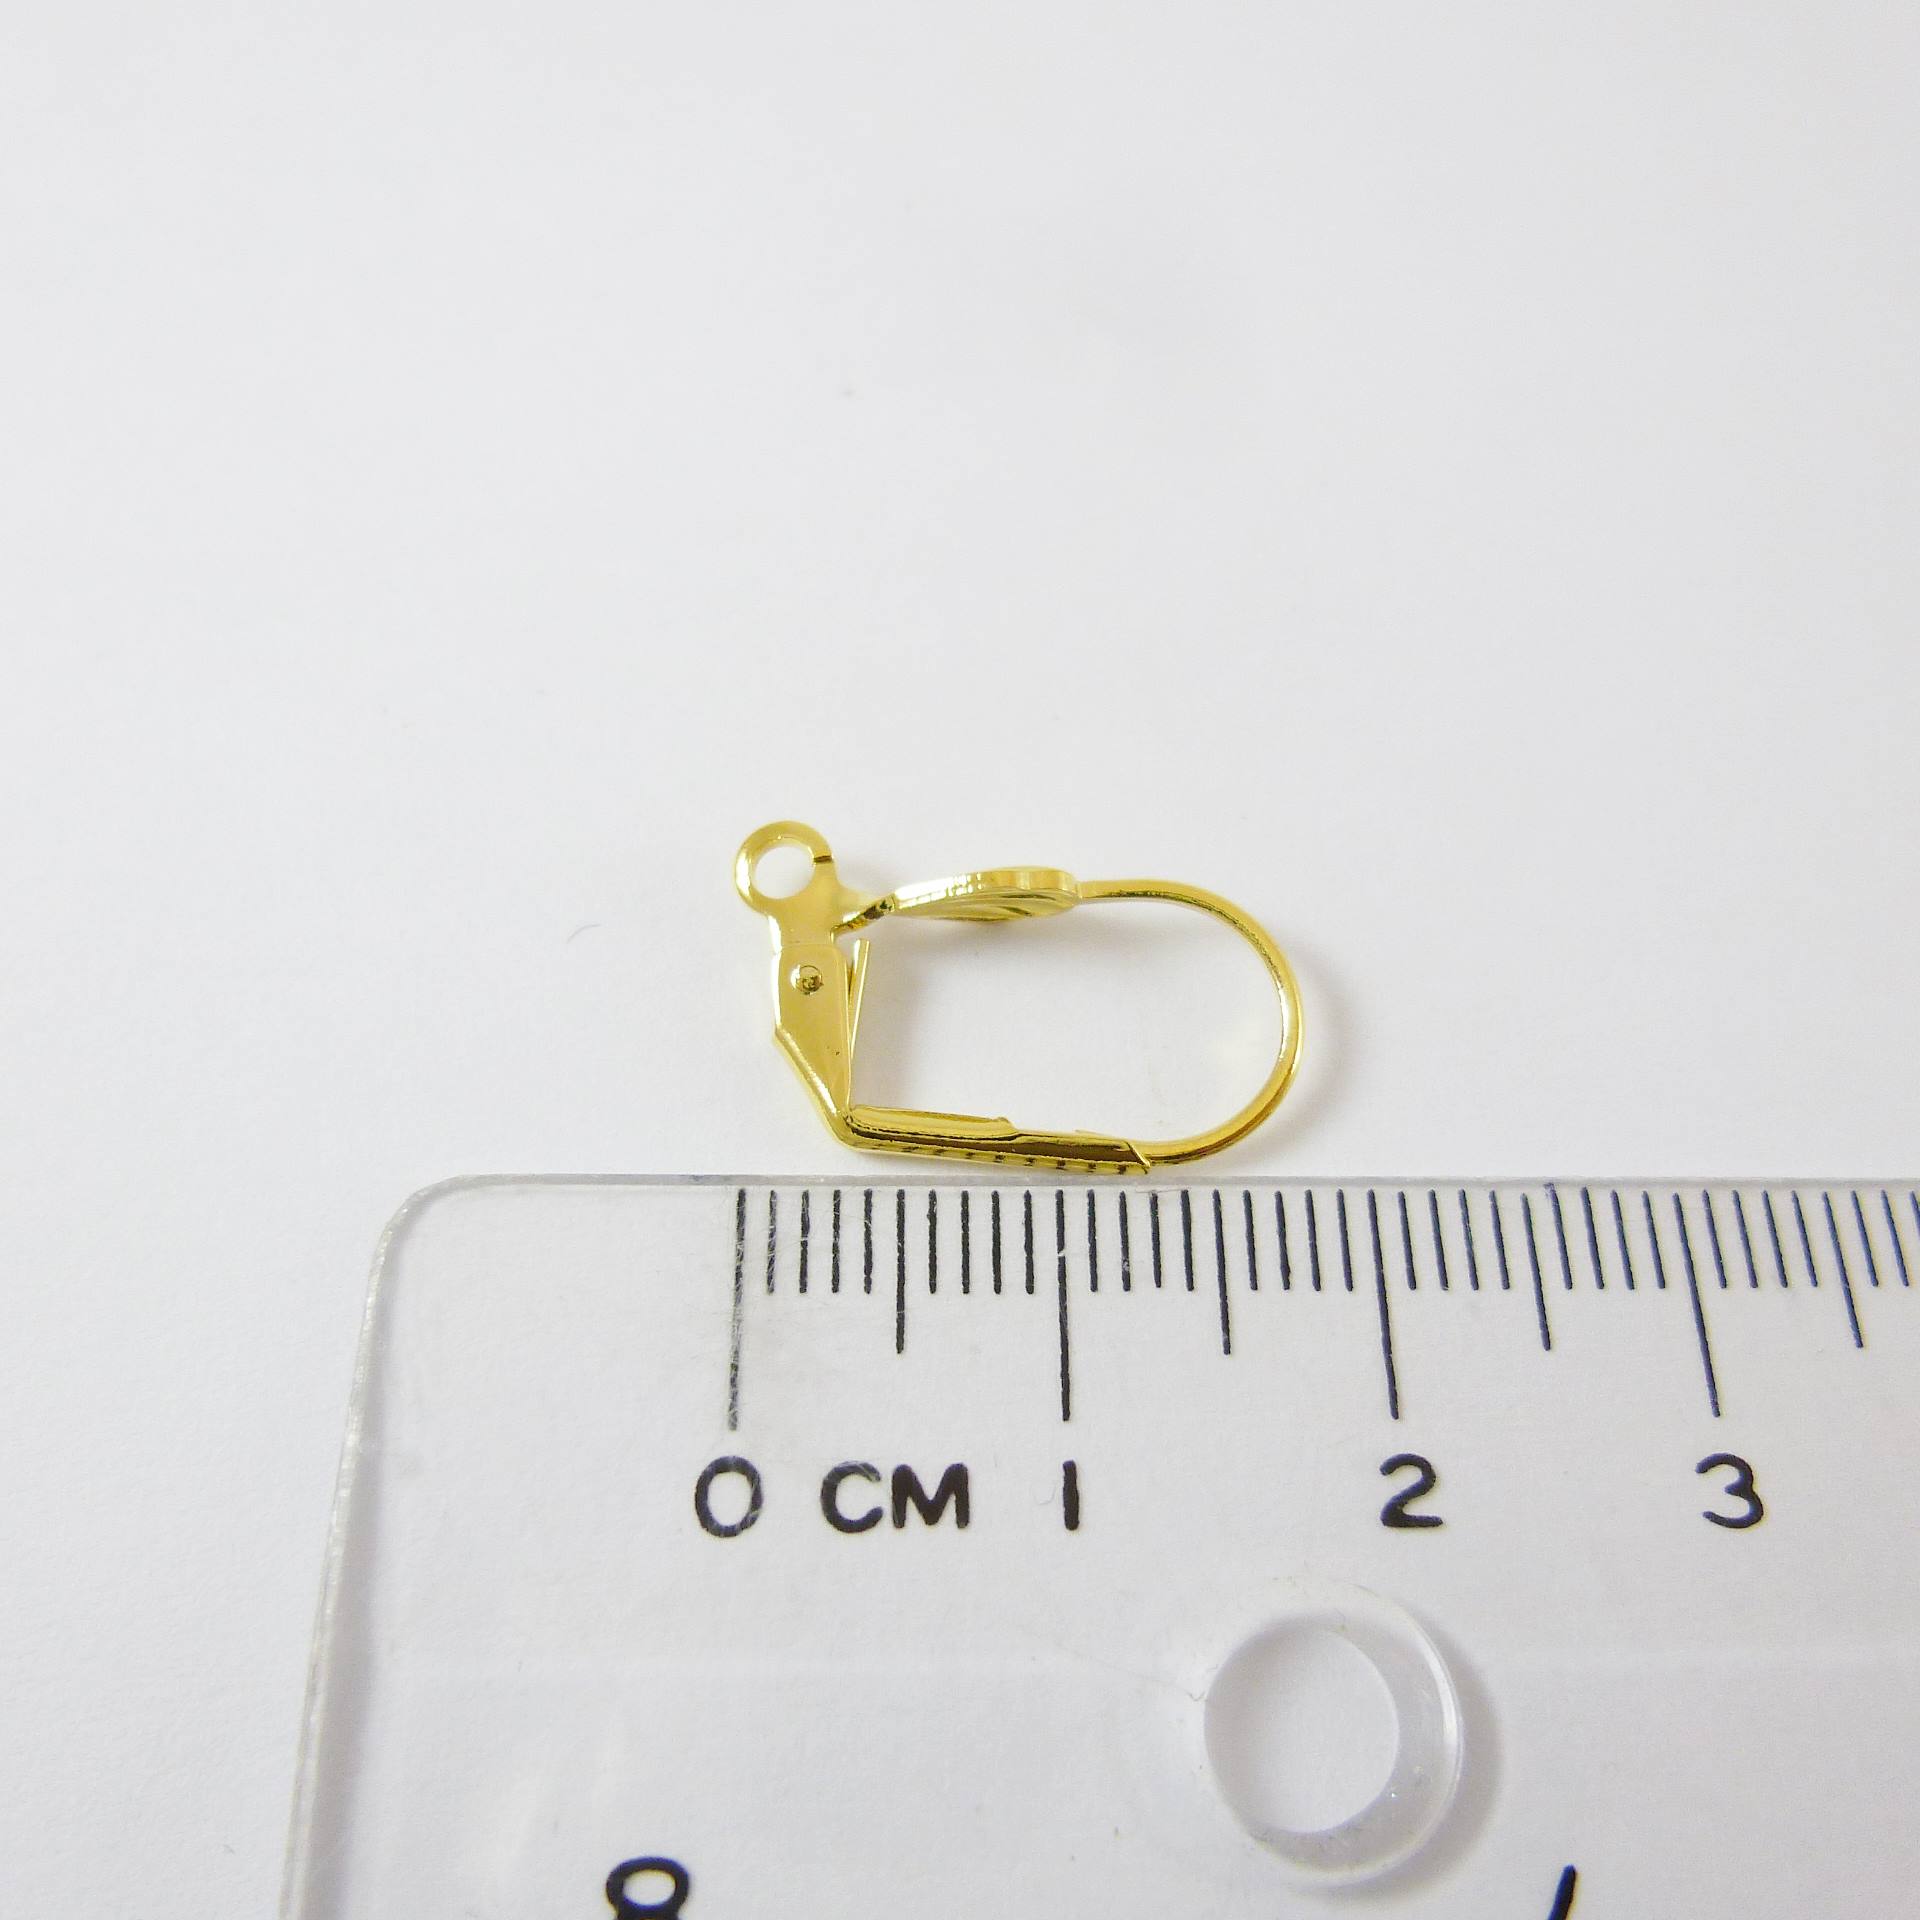 銅鍍金色貝殼耳環